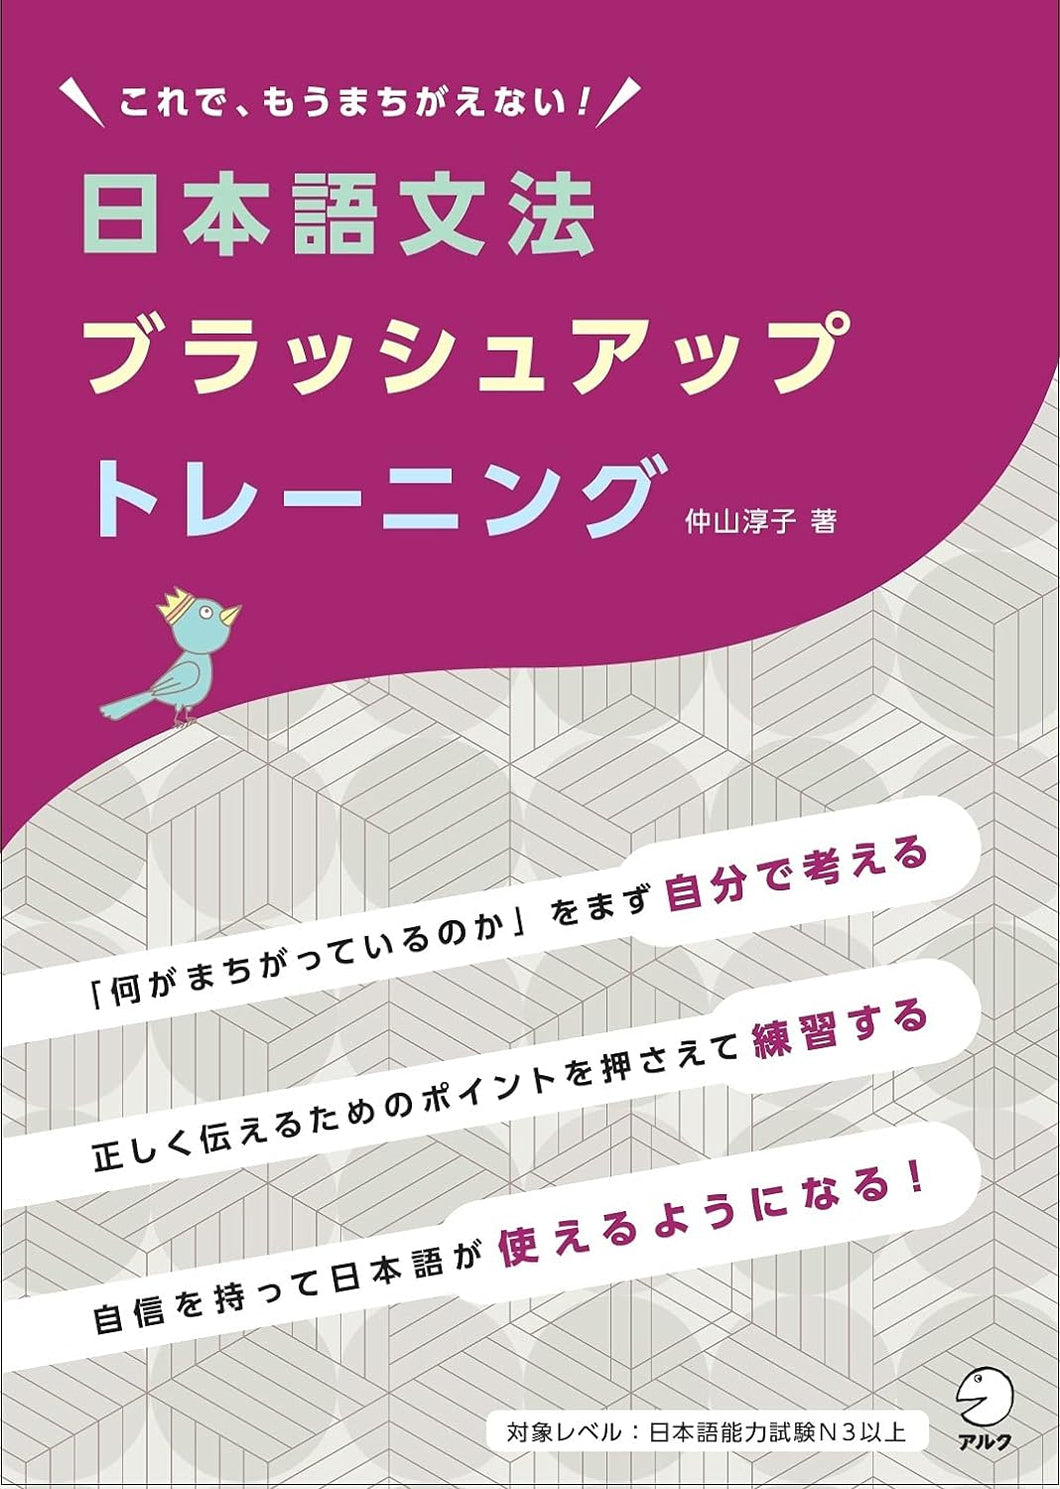 Nihongo Brush-up Grammar Training